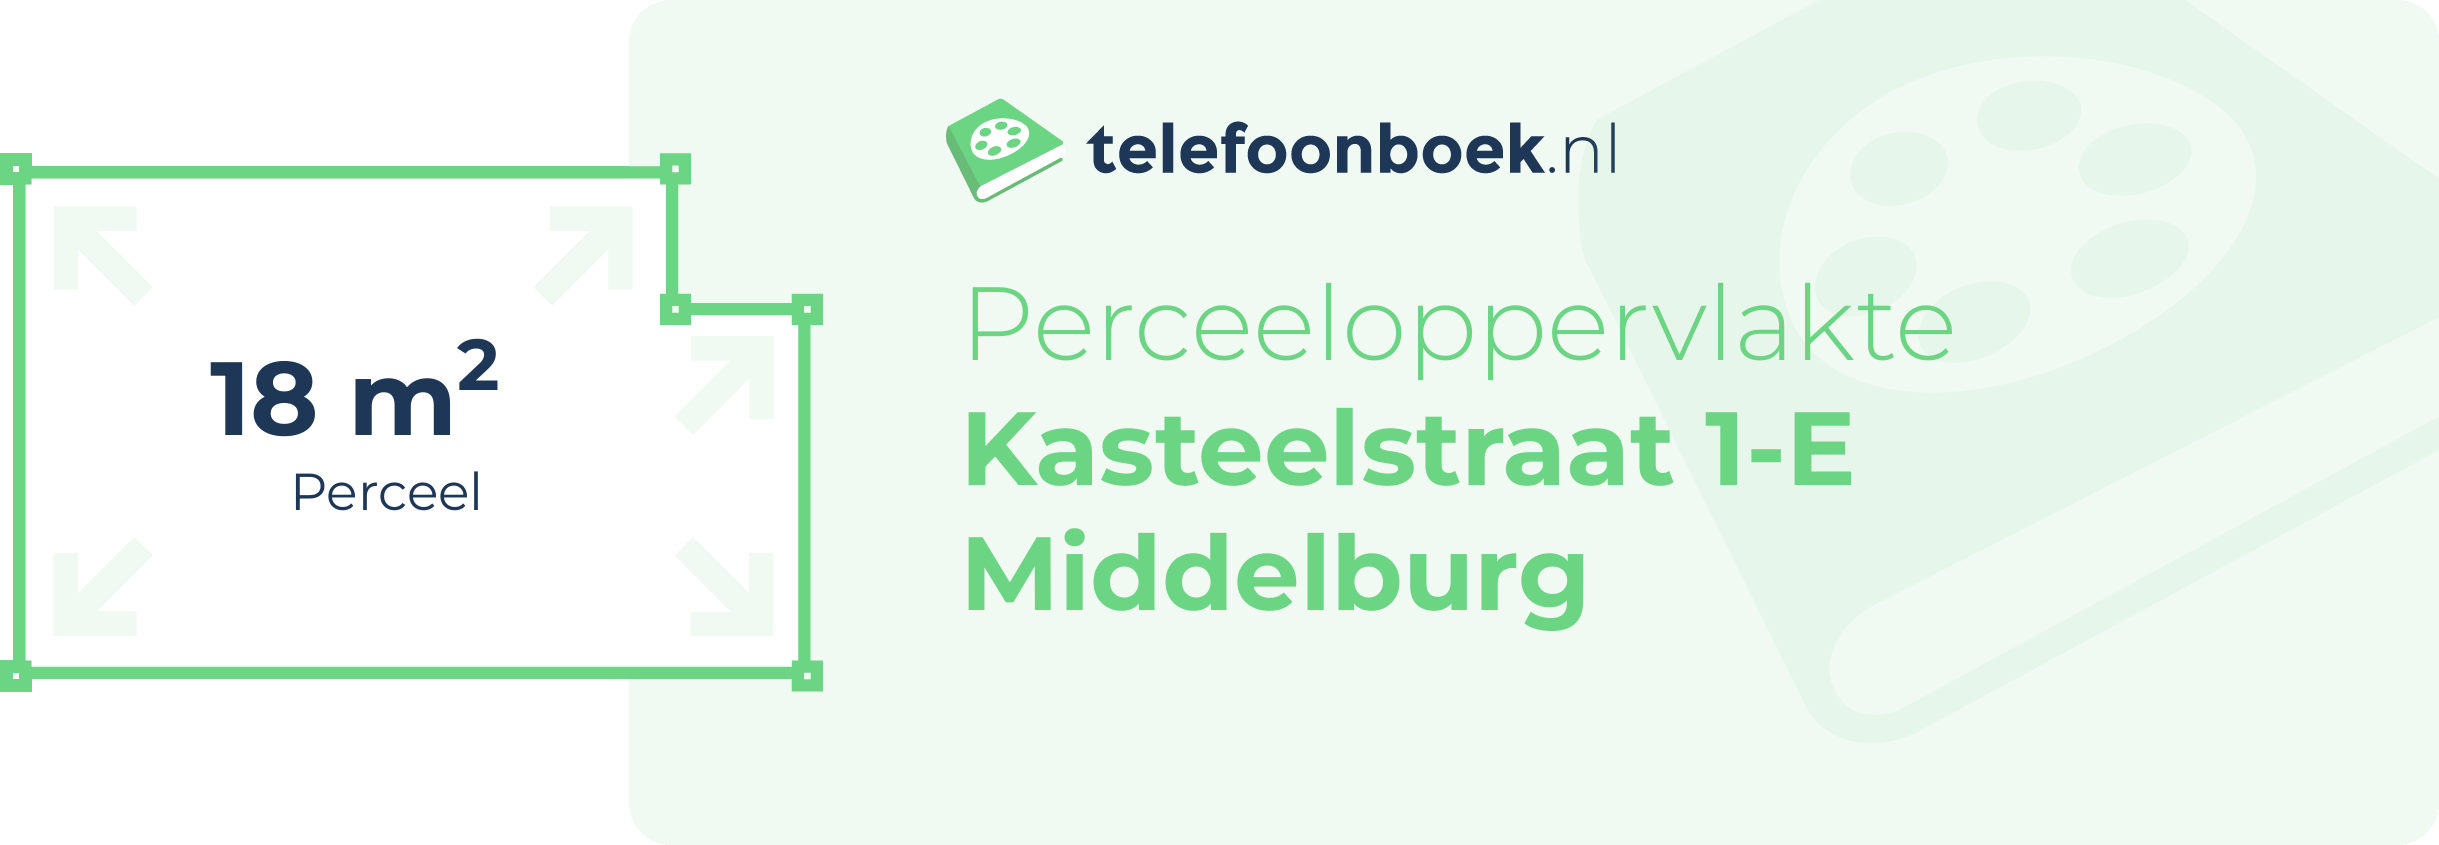 Perceeloppervlakte Kasteelstraat 1-E Middelburg